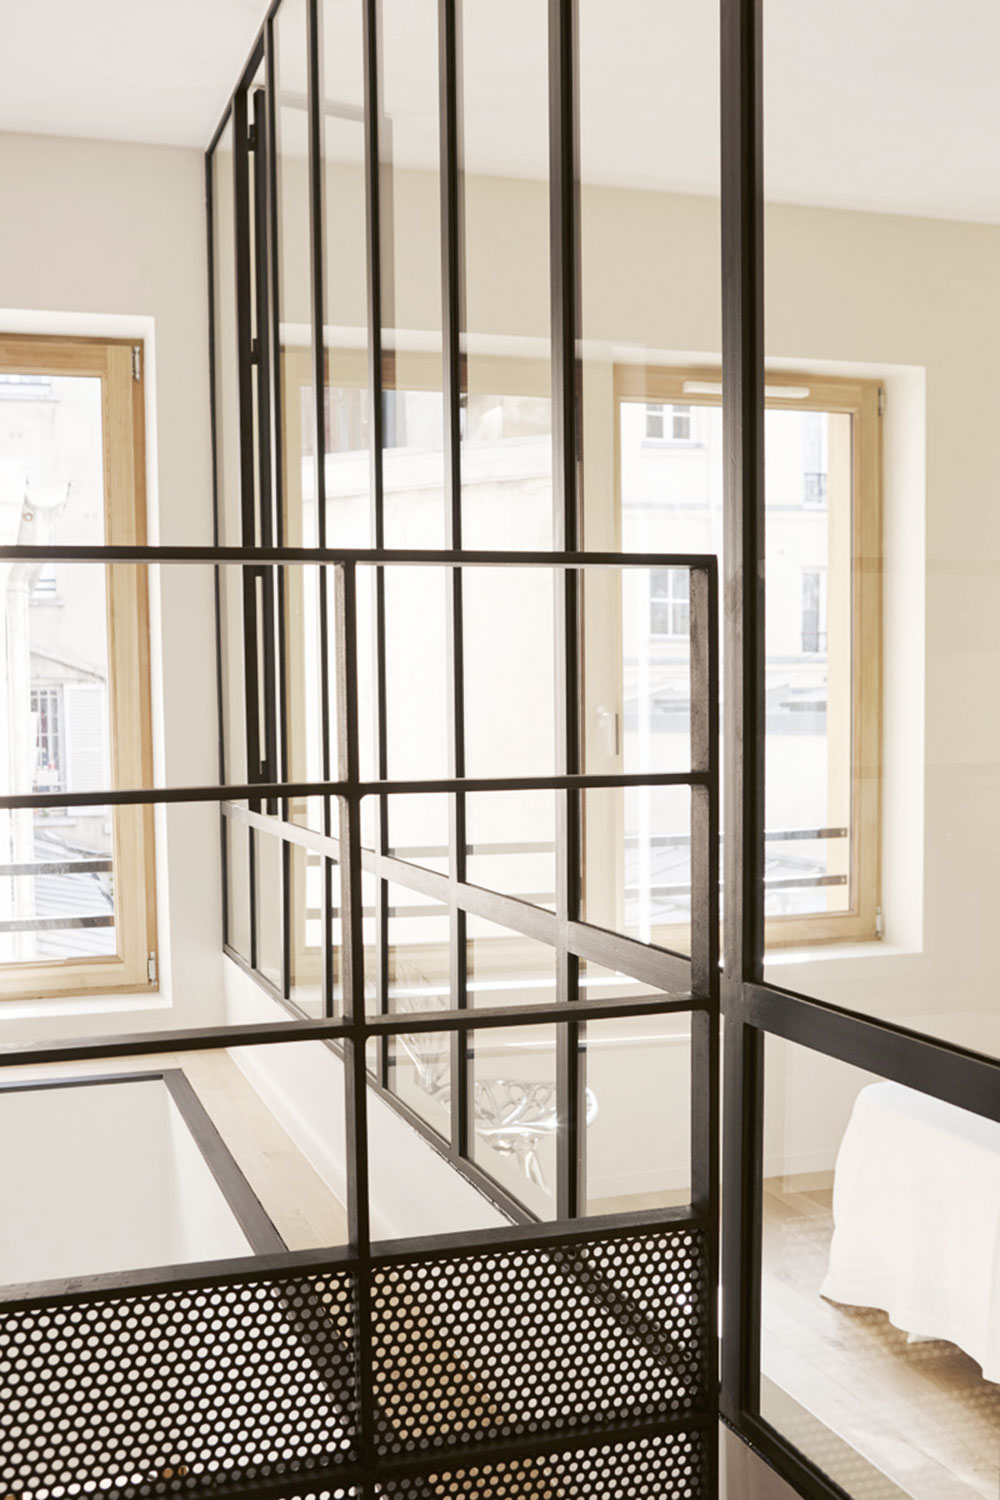 Ocelové zábradlí vytváří hezký kontrast se světlým interiérem na poschodí. FOTO DAVID COUSIN-MARSY